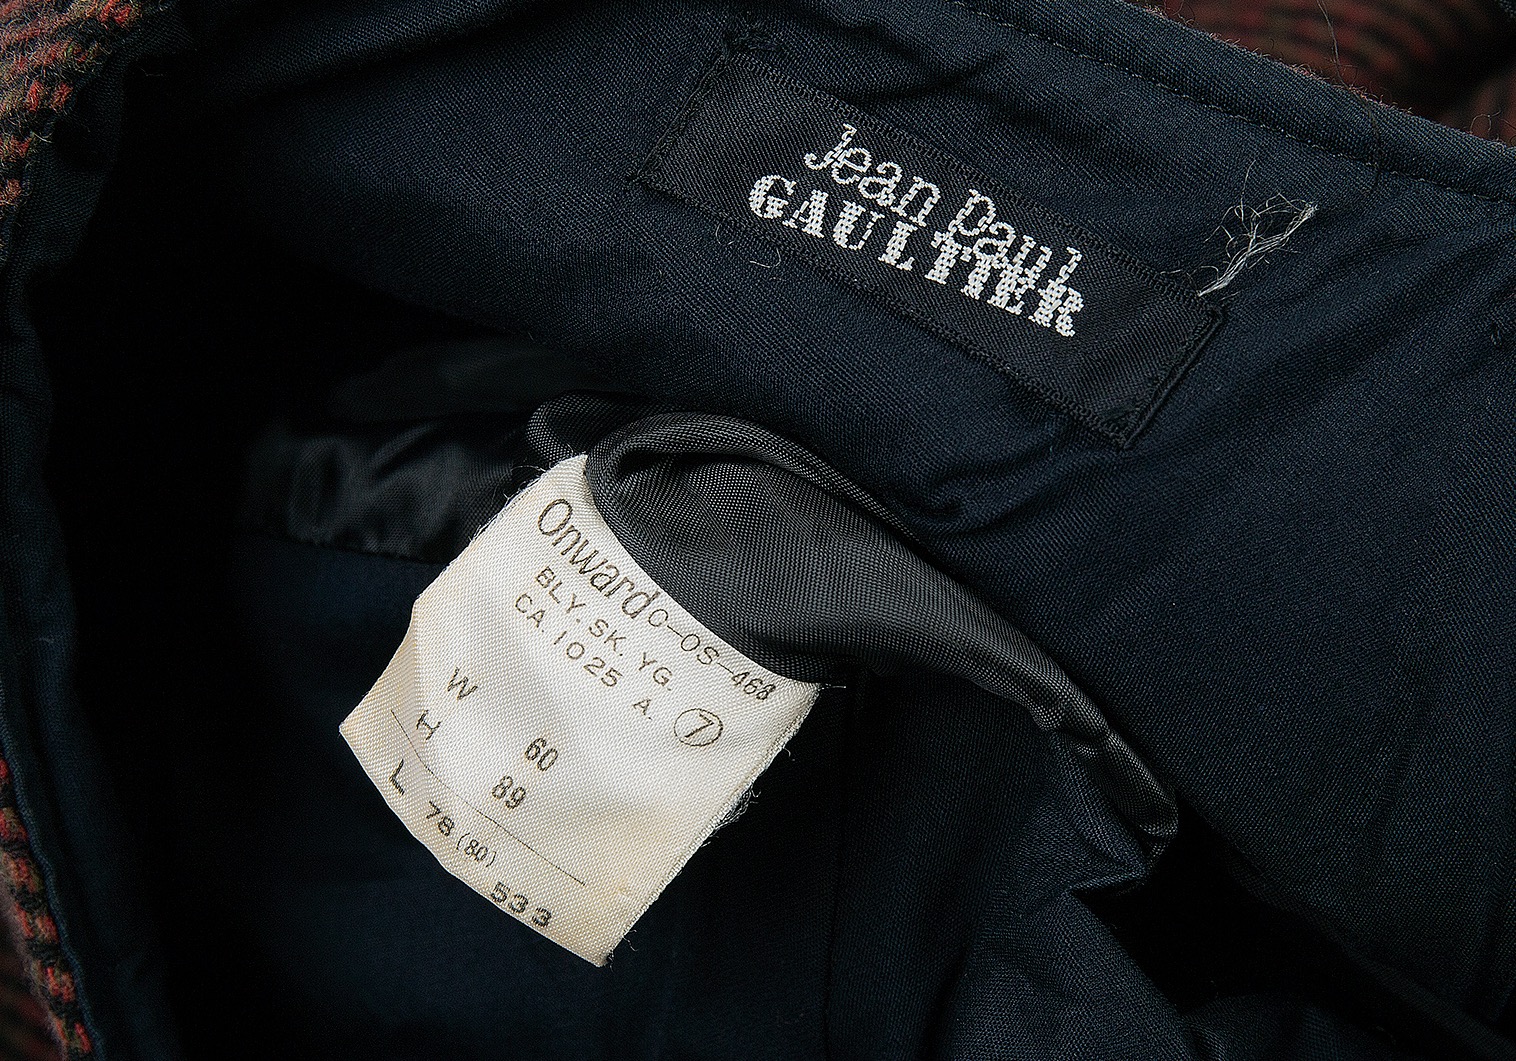 タグ付 イタリア製 jean paul gaultier ジャンポール ゴルチエ